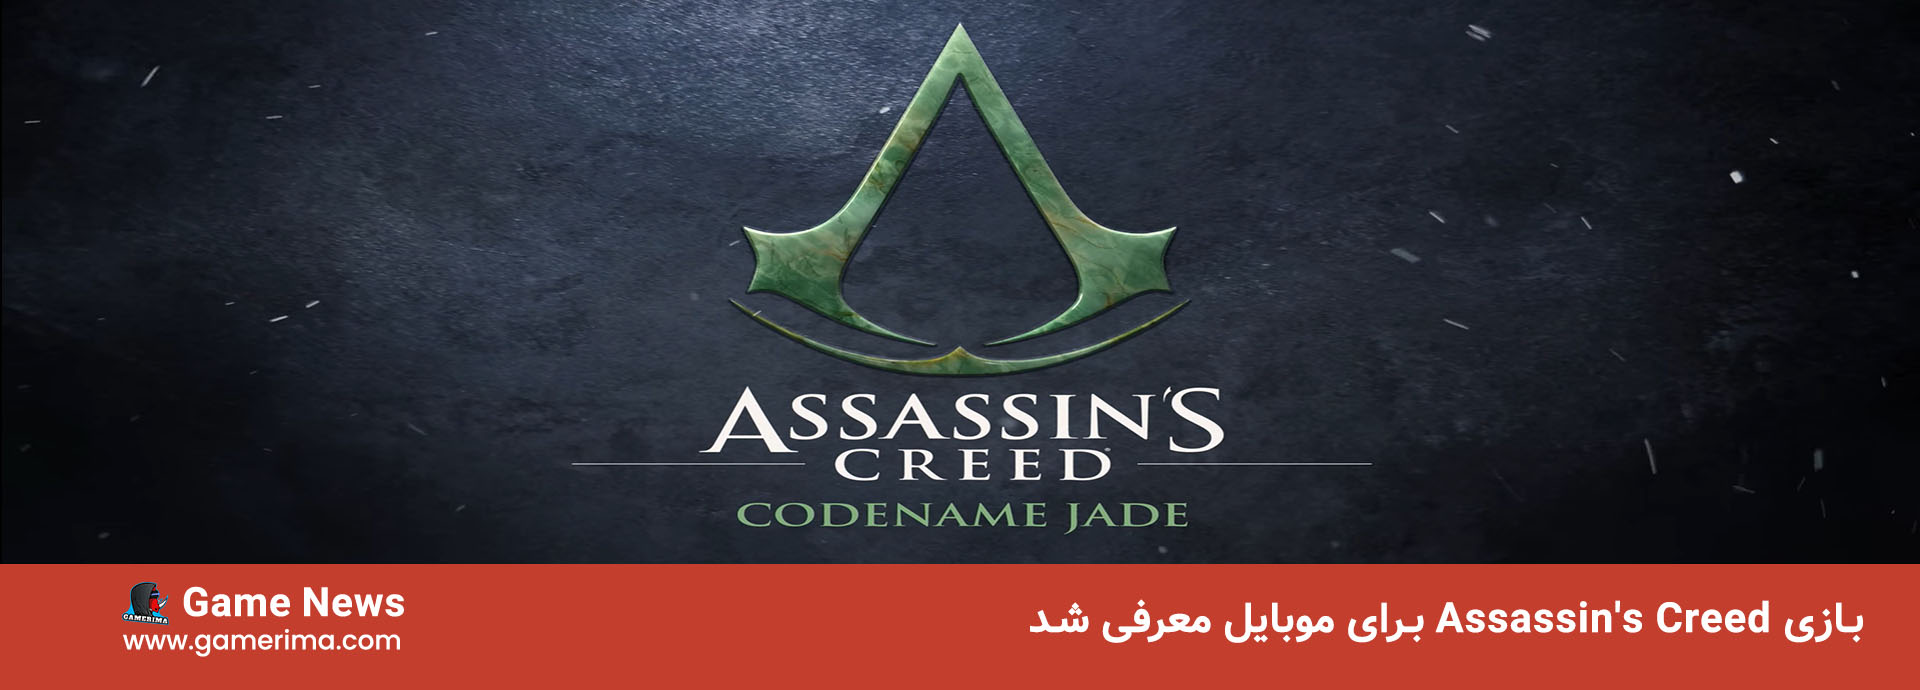 بازی assassin’s creed jade برای موبایل معرفی شد